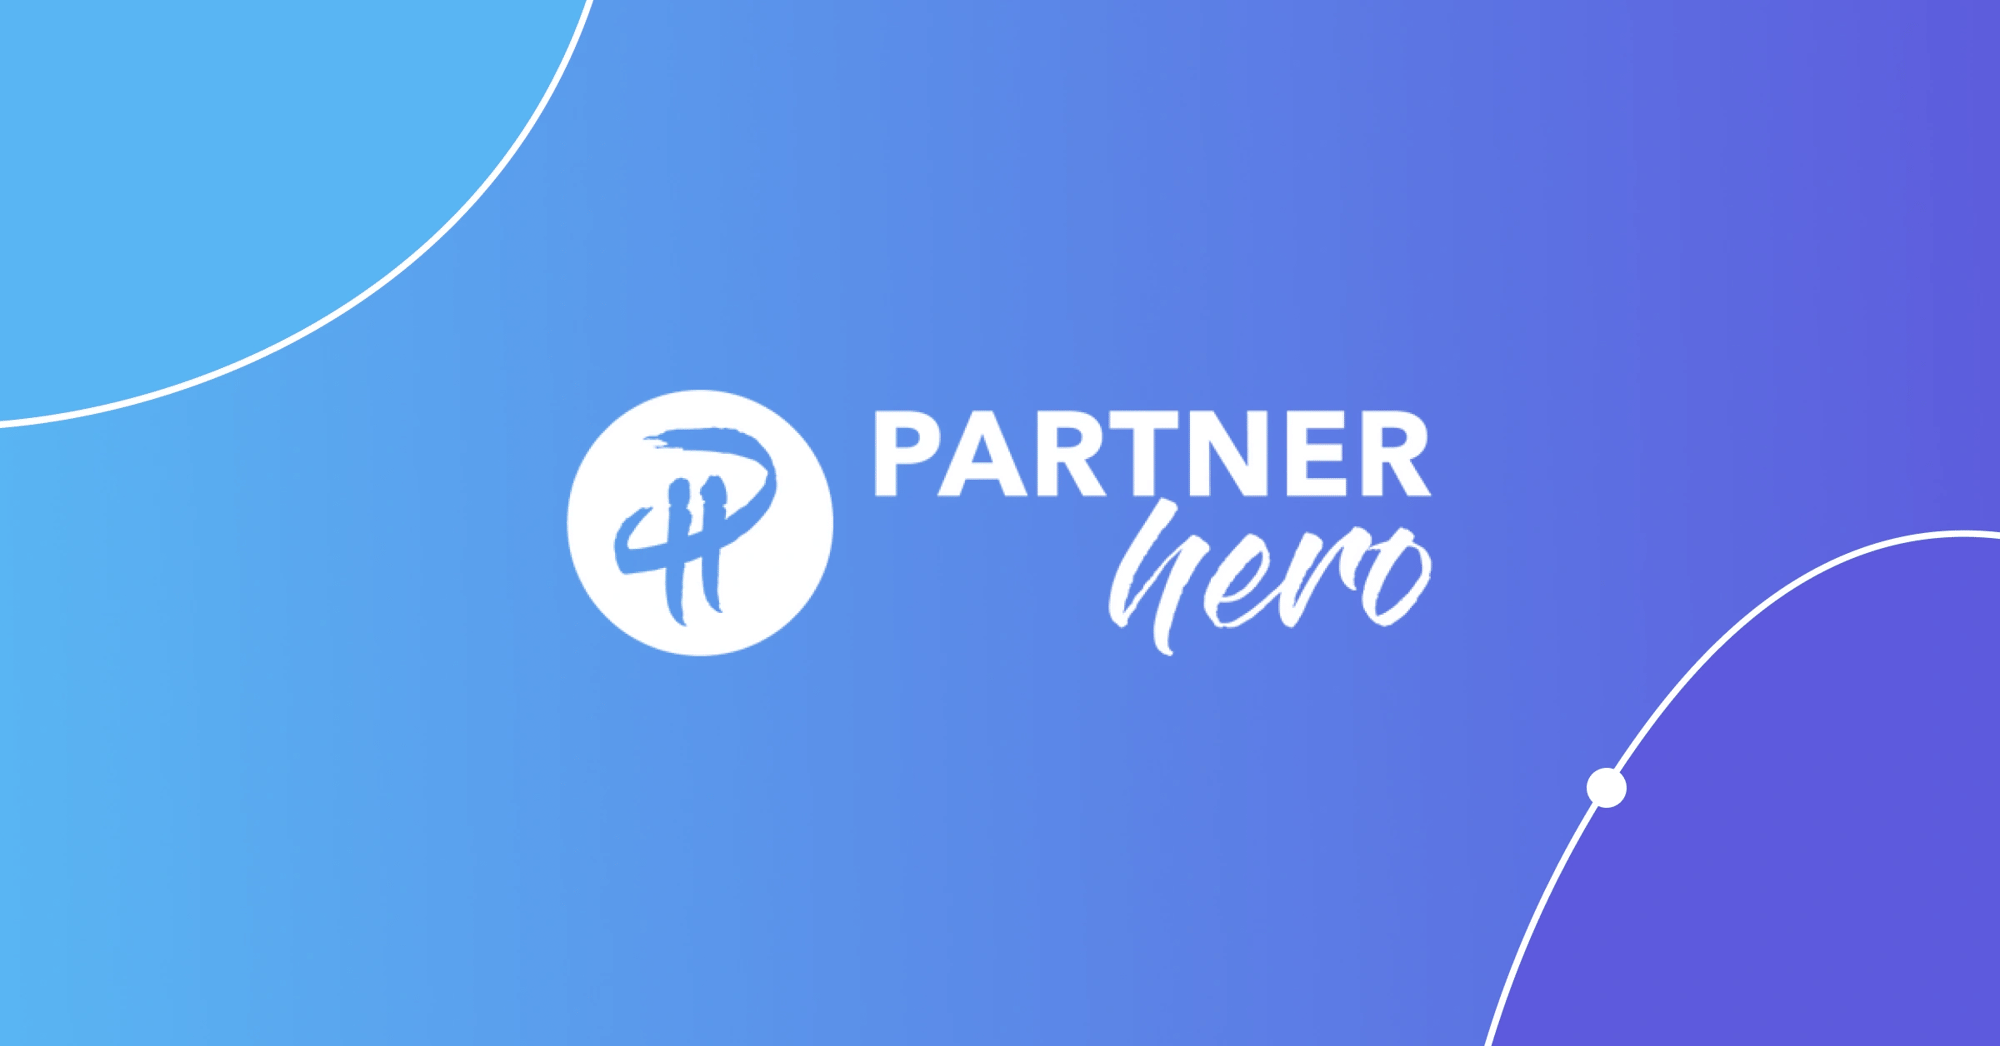 Blog_Header_PH_Partnership-3